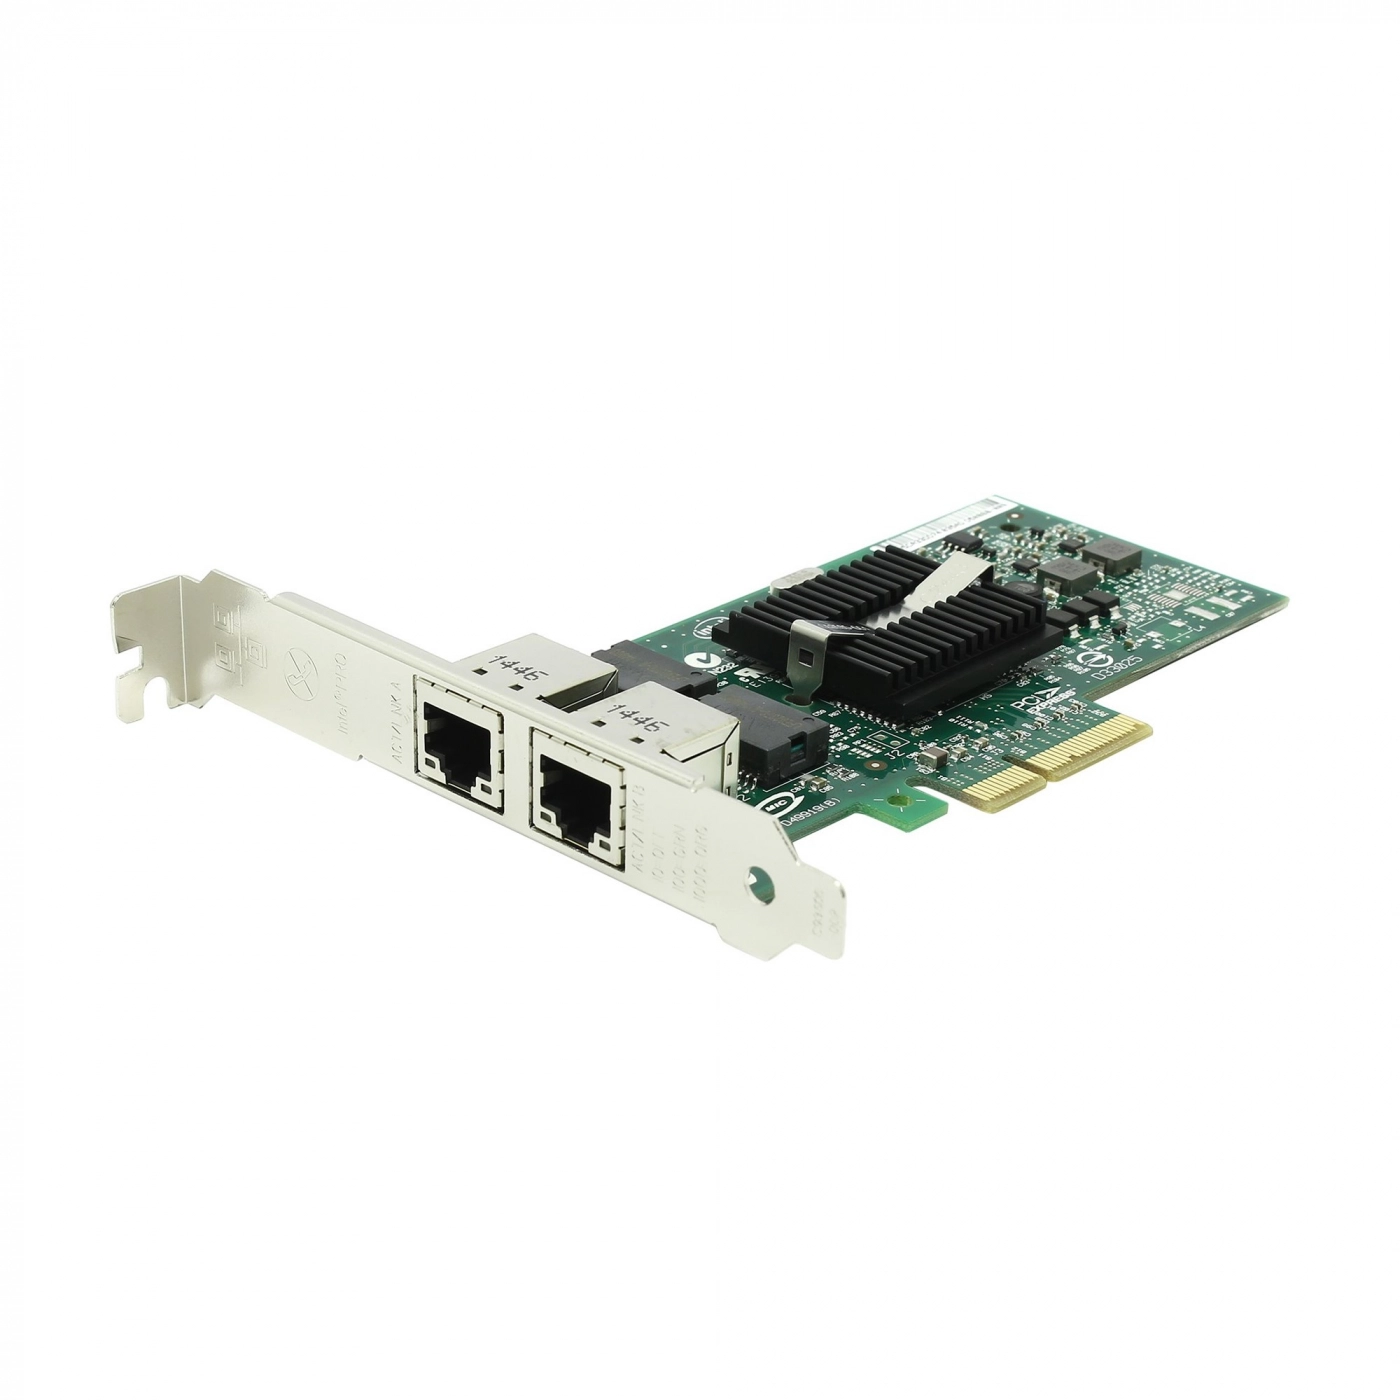 Купить Сетевая карта Intel Pro/1000+ Dual Port Server Adapter - фото 1